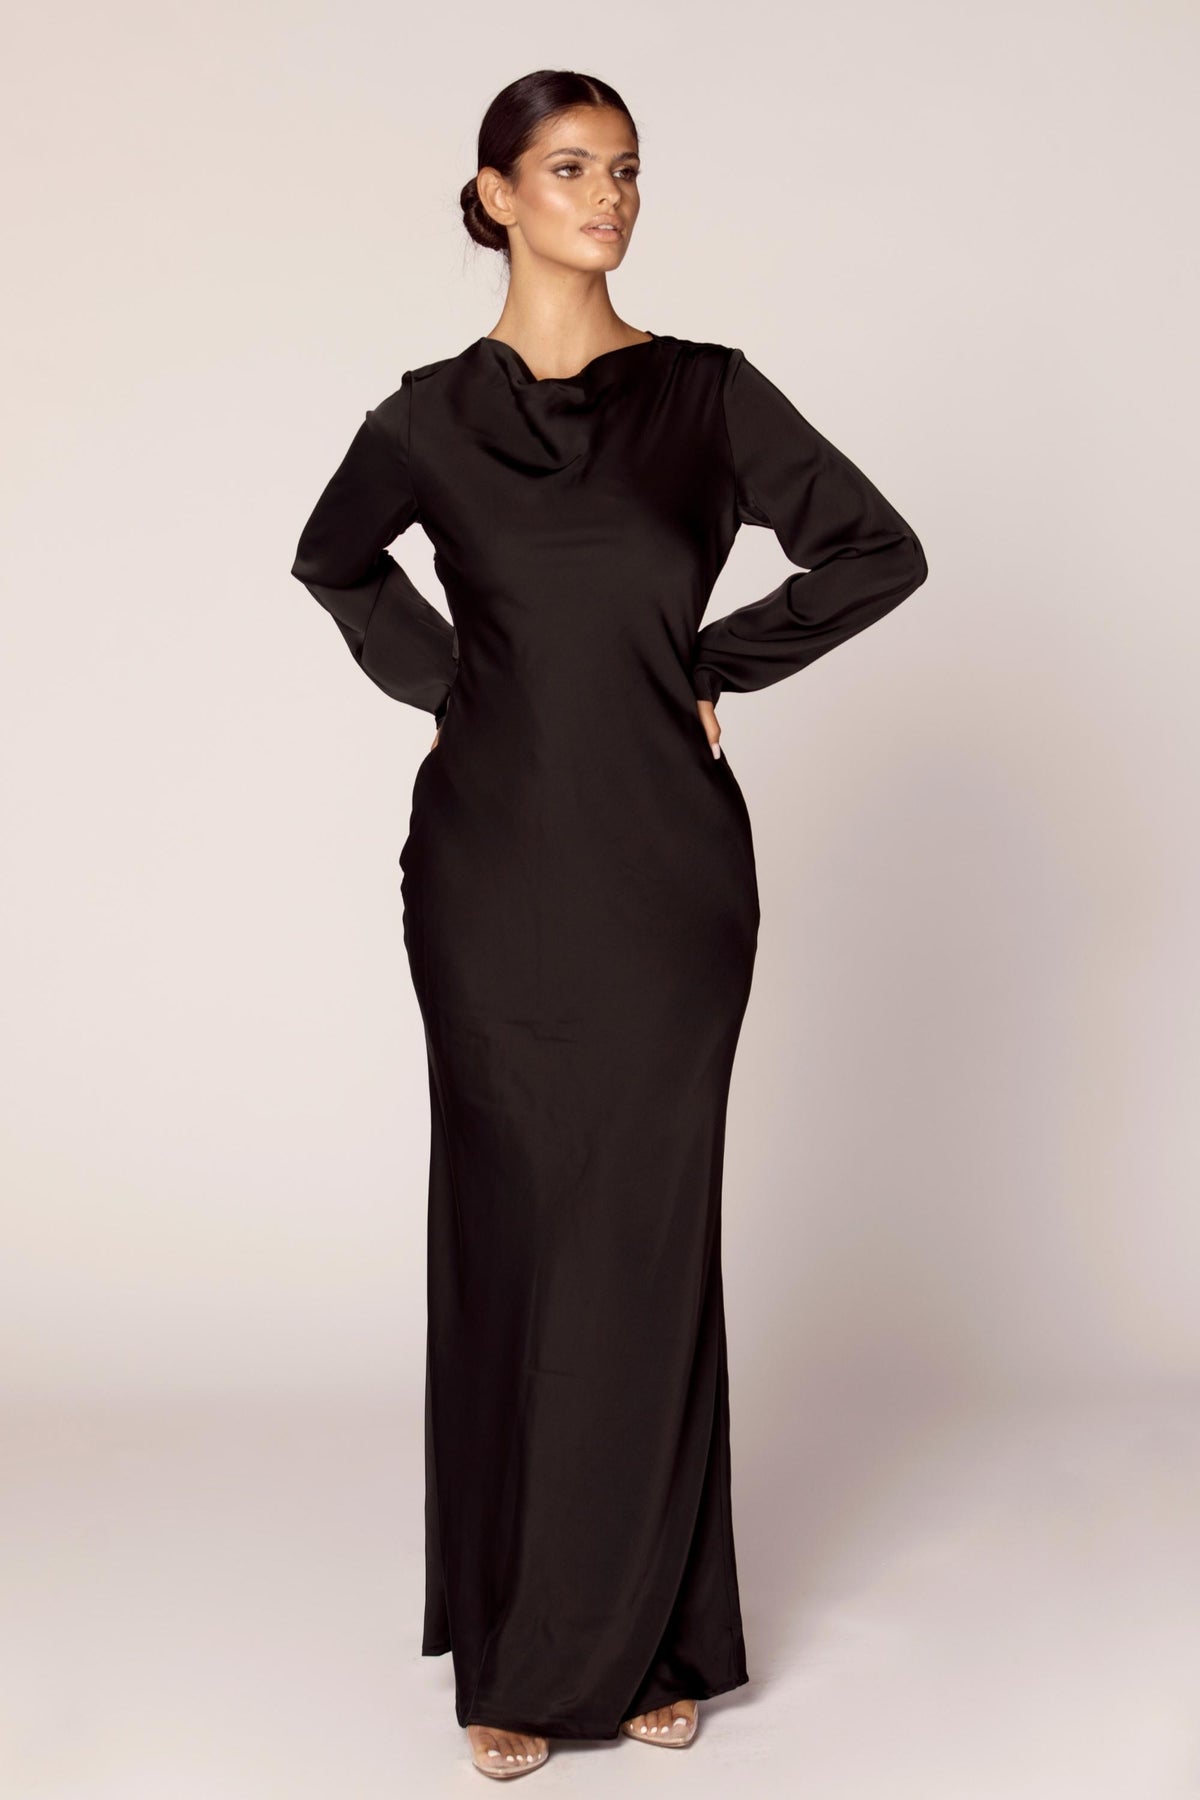 Aysha Satin Maxi Dress - Black Dresses Veiled Collection 